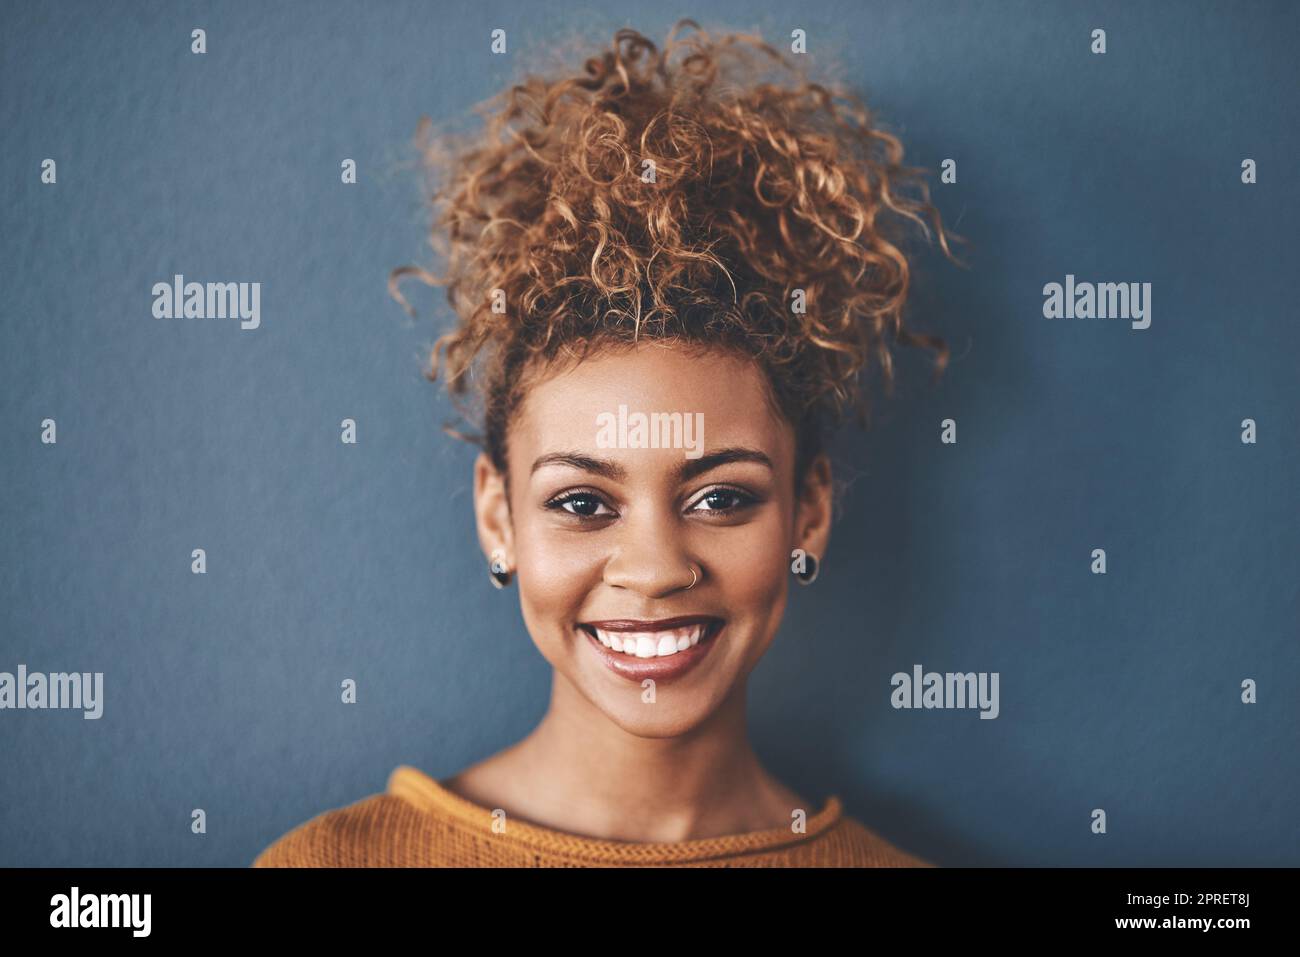 Gesicht einer glücklichen, selbstbewussten und schönen schwarzen Frau mit einer positiven Einstellung und einem strahlenden Lächeln. Porträt einer sorglosen, hübschen und attraktiven afroamerikanischen Frau, isoliert im Studiohintergrund Stockfoto